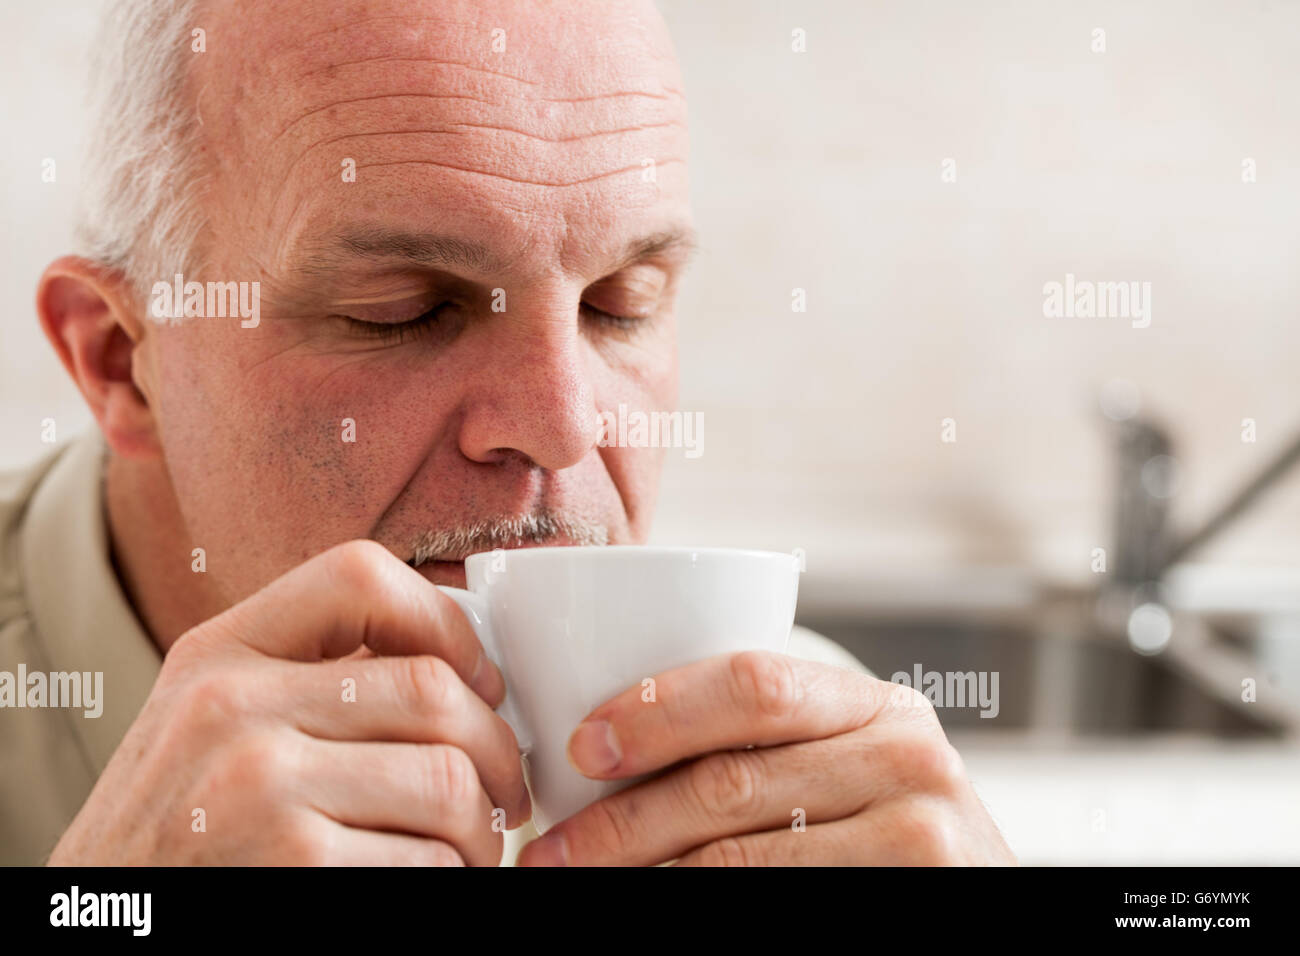 Cerrar el único hombre maduro barbudo con ojos cerrados y expresión soñolienta tomando café desde la pequeña taza de té blanco Foto de stock